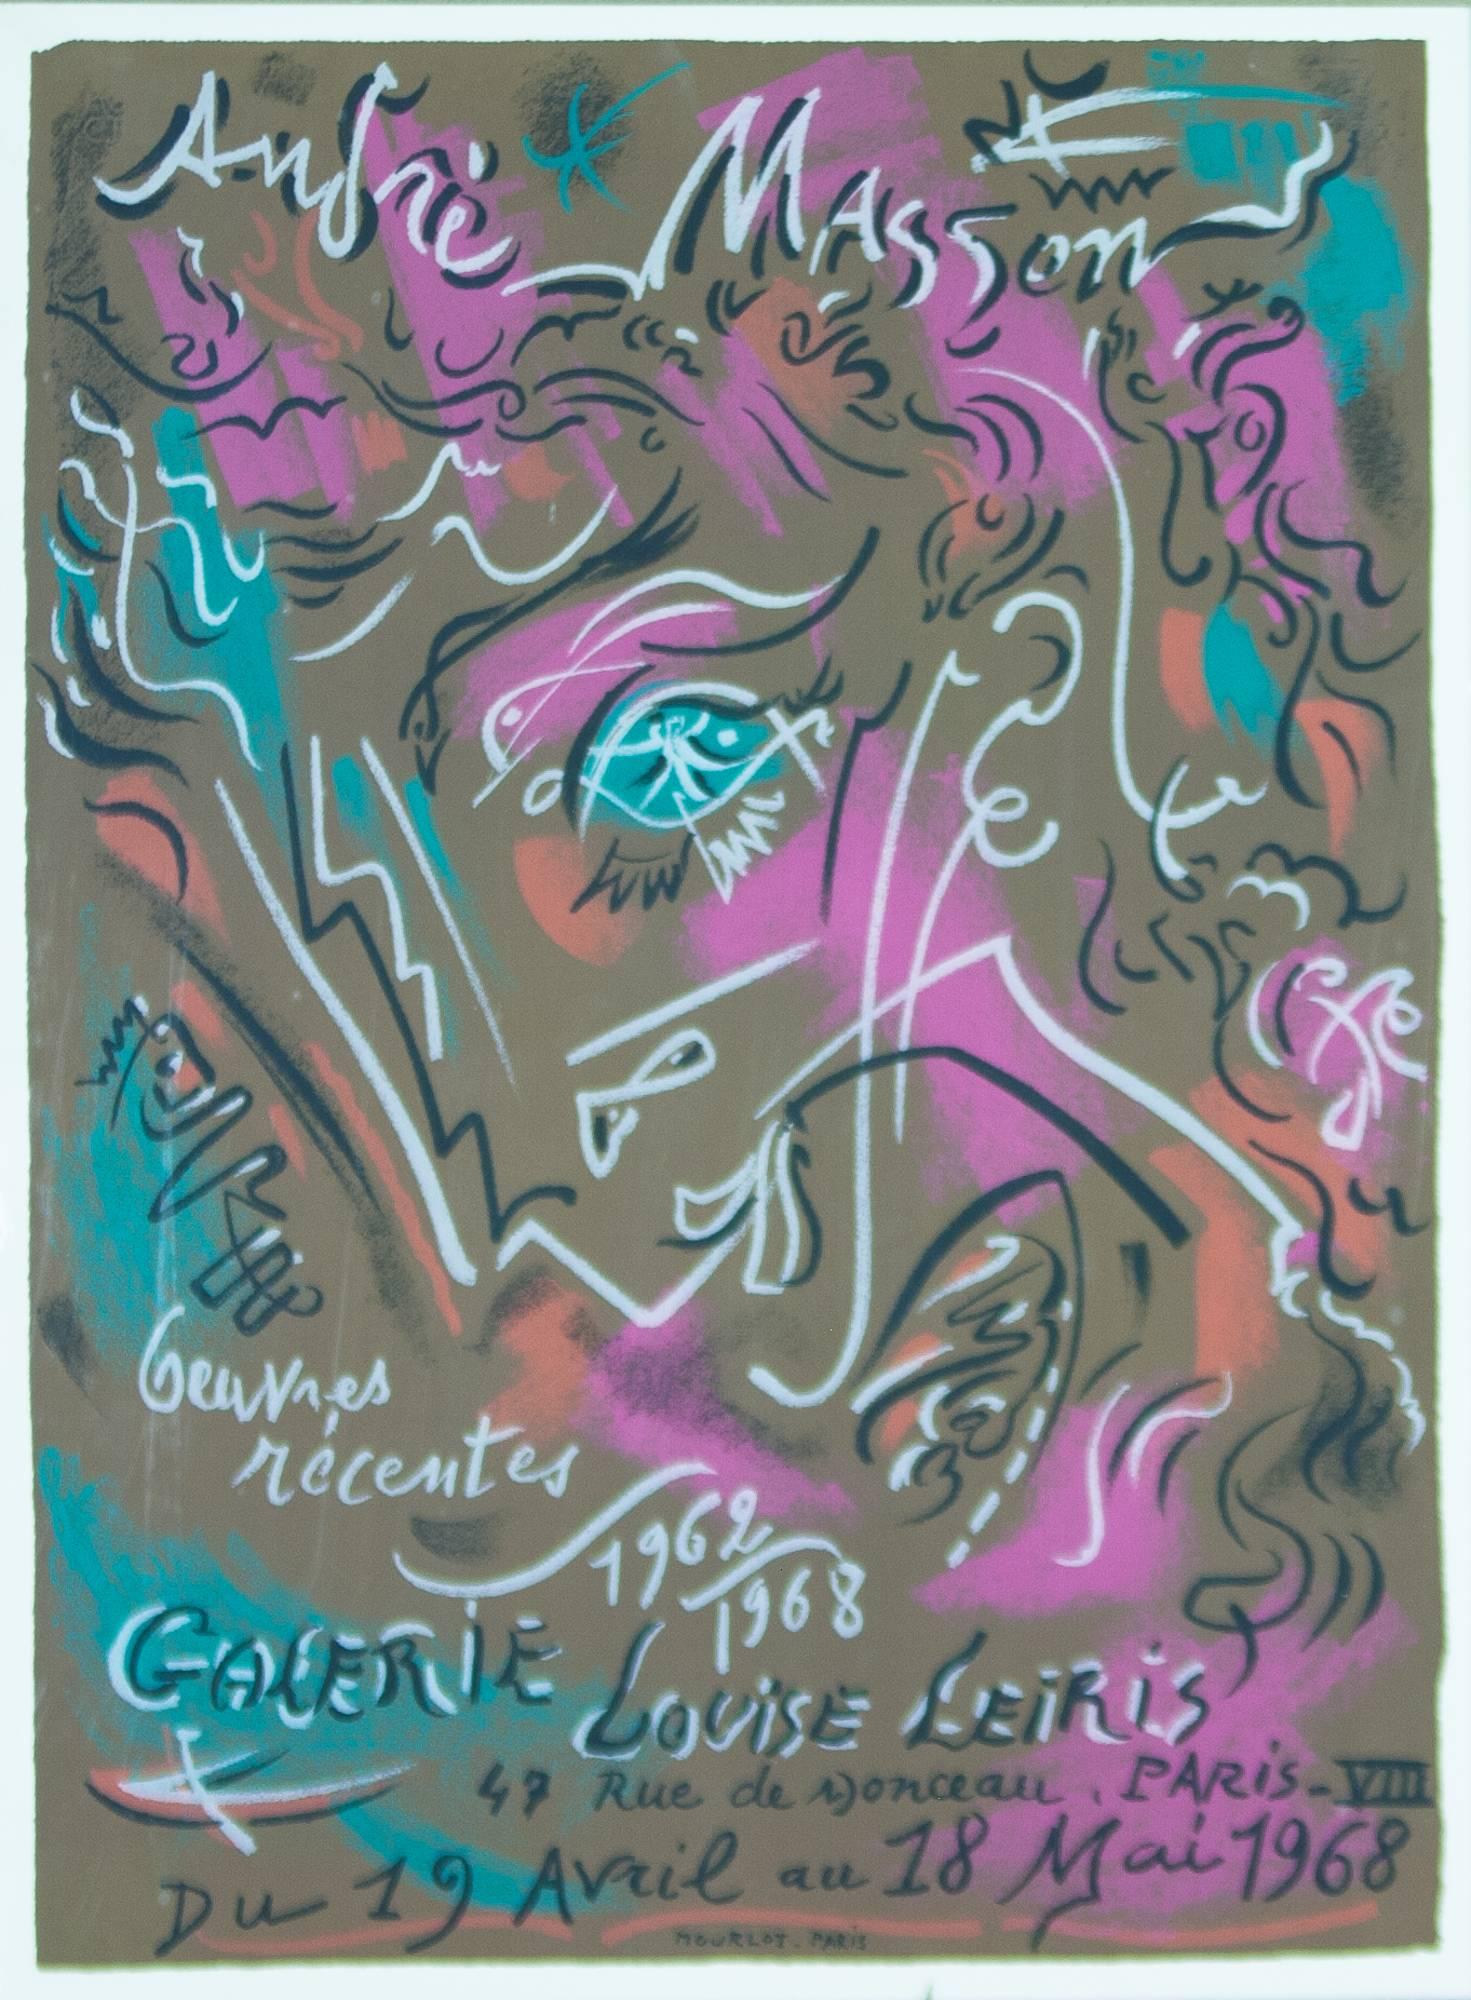 André Masson Abstract Print - Andre Masson Exposition de ses œuvres récentes 1962-1968 à la Galerie Louise